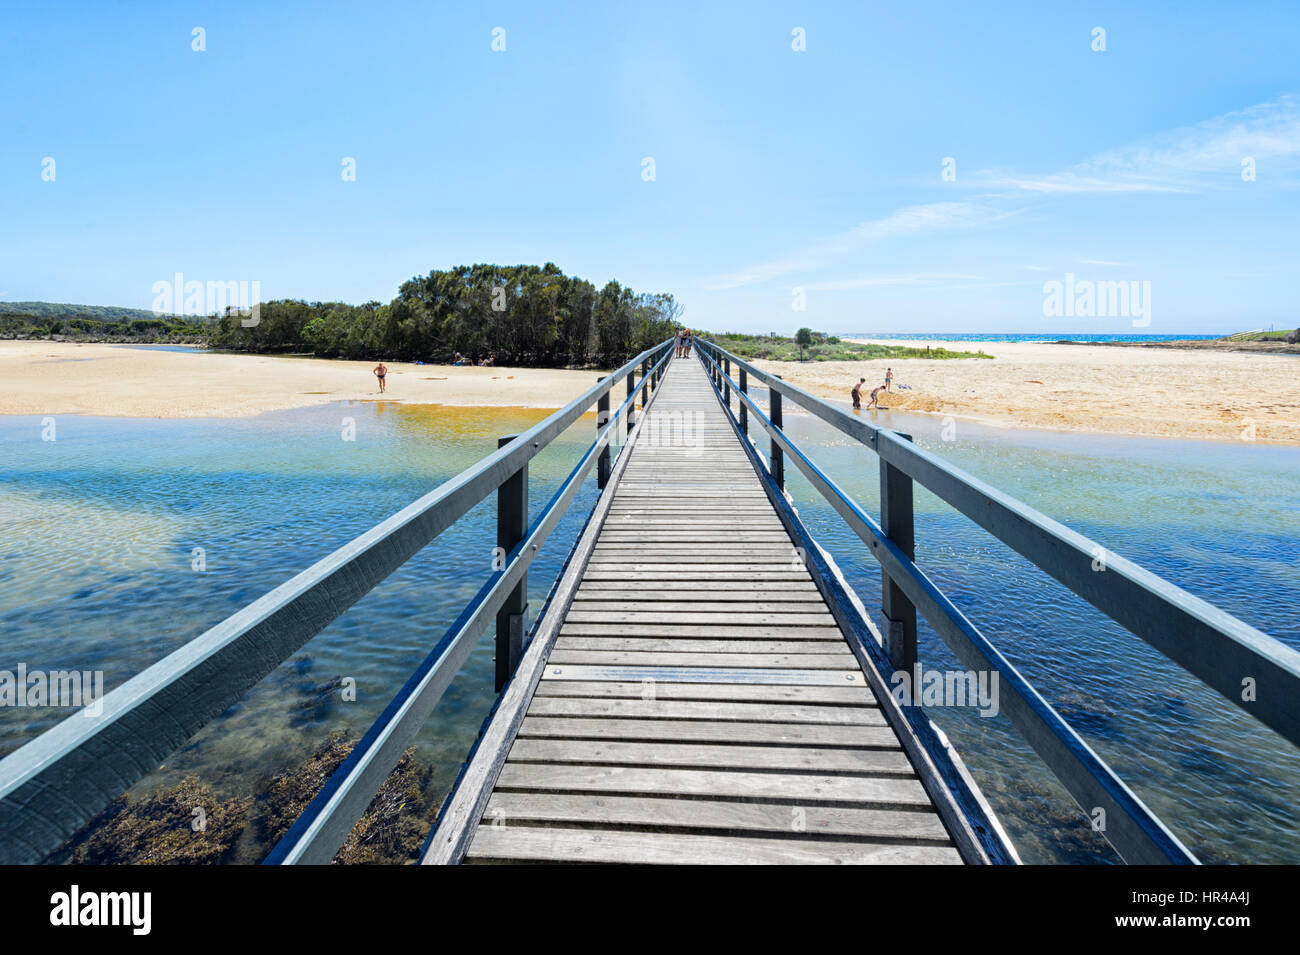 Il Boardwalk accesso alla laguna costiera e la spiaggia di sabbia, Dalmeny, Nuovo Galles del Sud, Australia Foto Stock